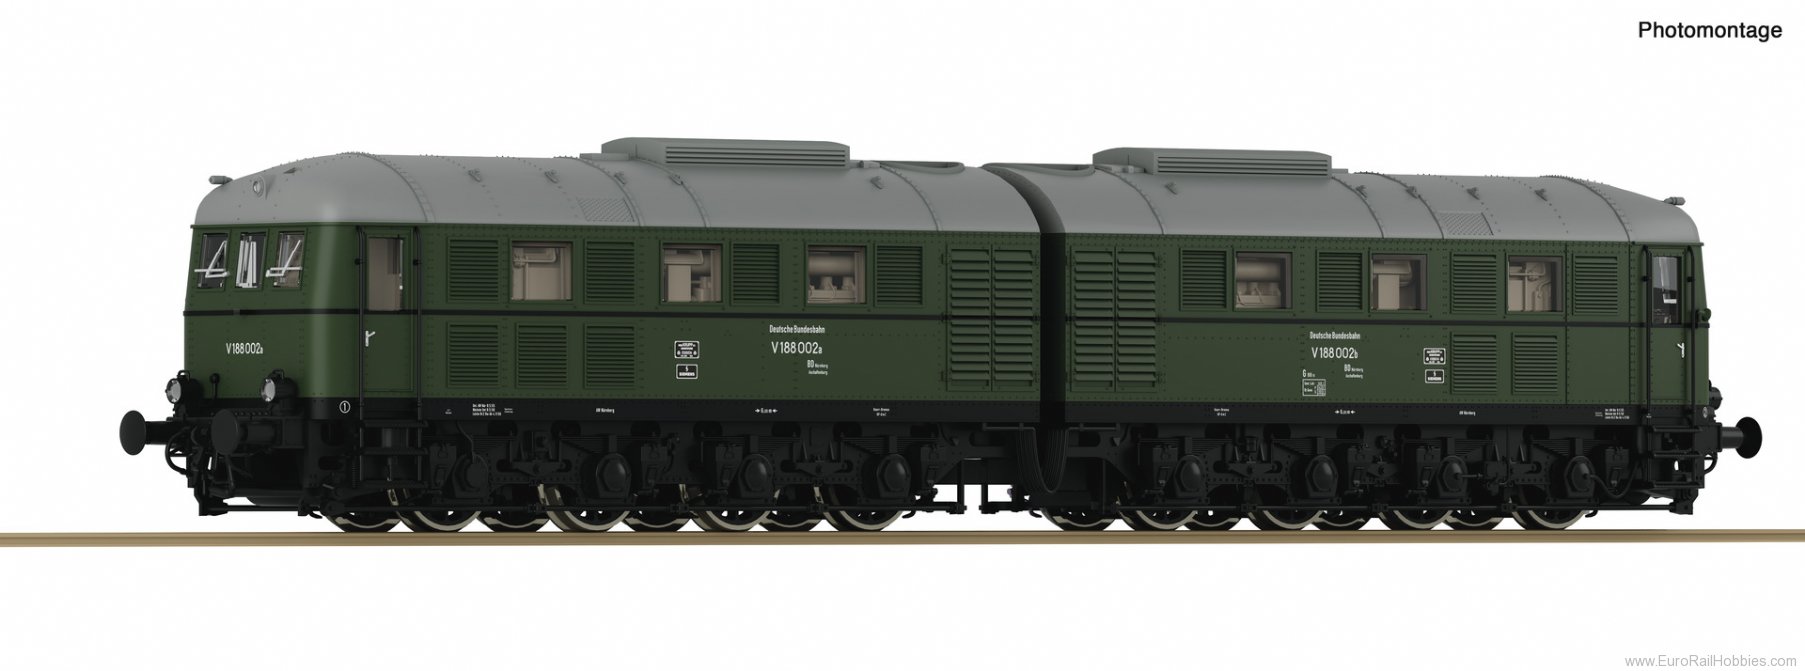 Roco 70118 Diesel-electric double locomotive V 188 002, 